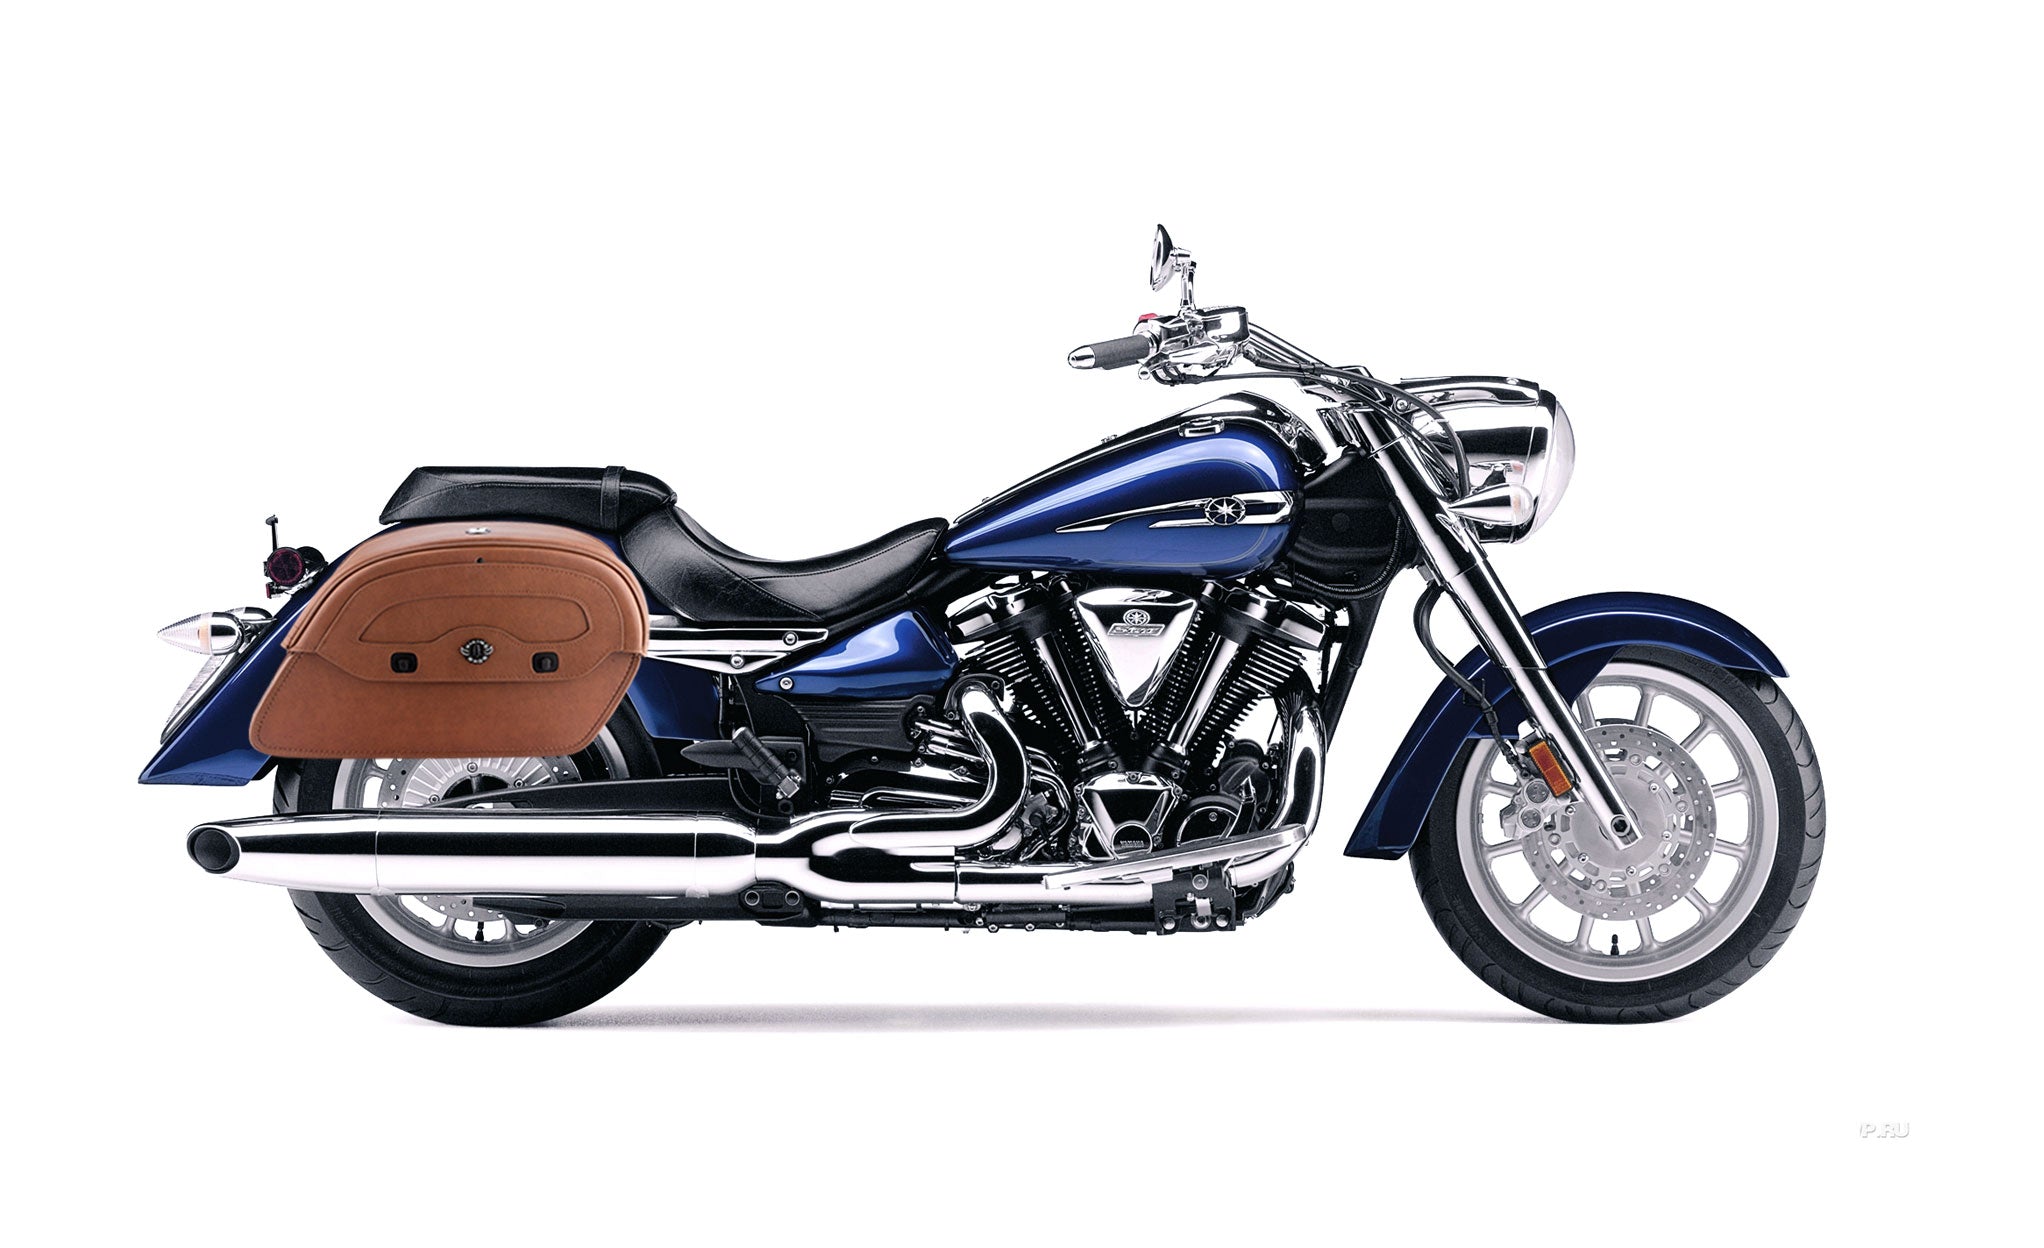 Viking Warrior Brown Large Yamaha Stratoliner Xv 1900 Leather Motorcycle Saddlebags on Bike Photo @expand